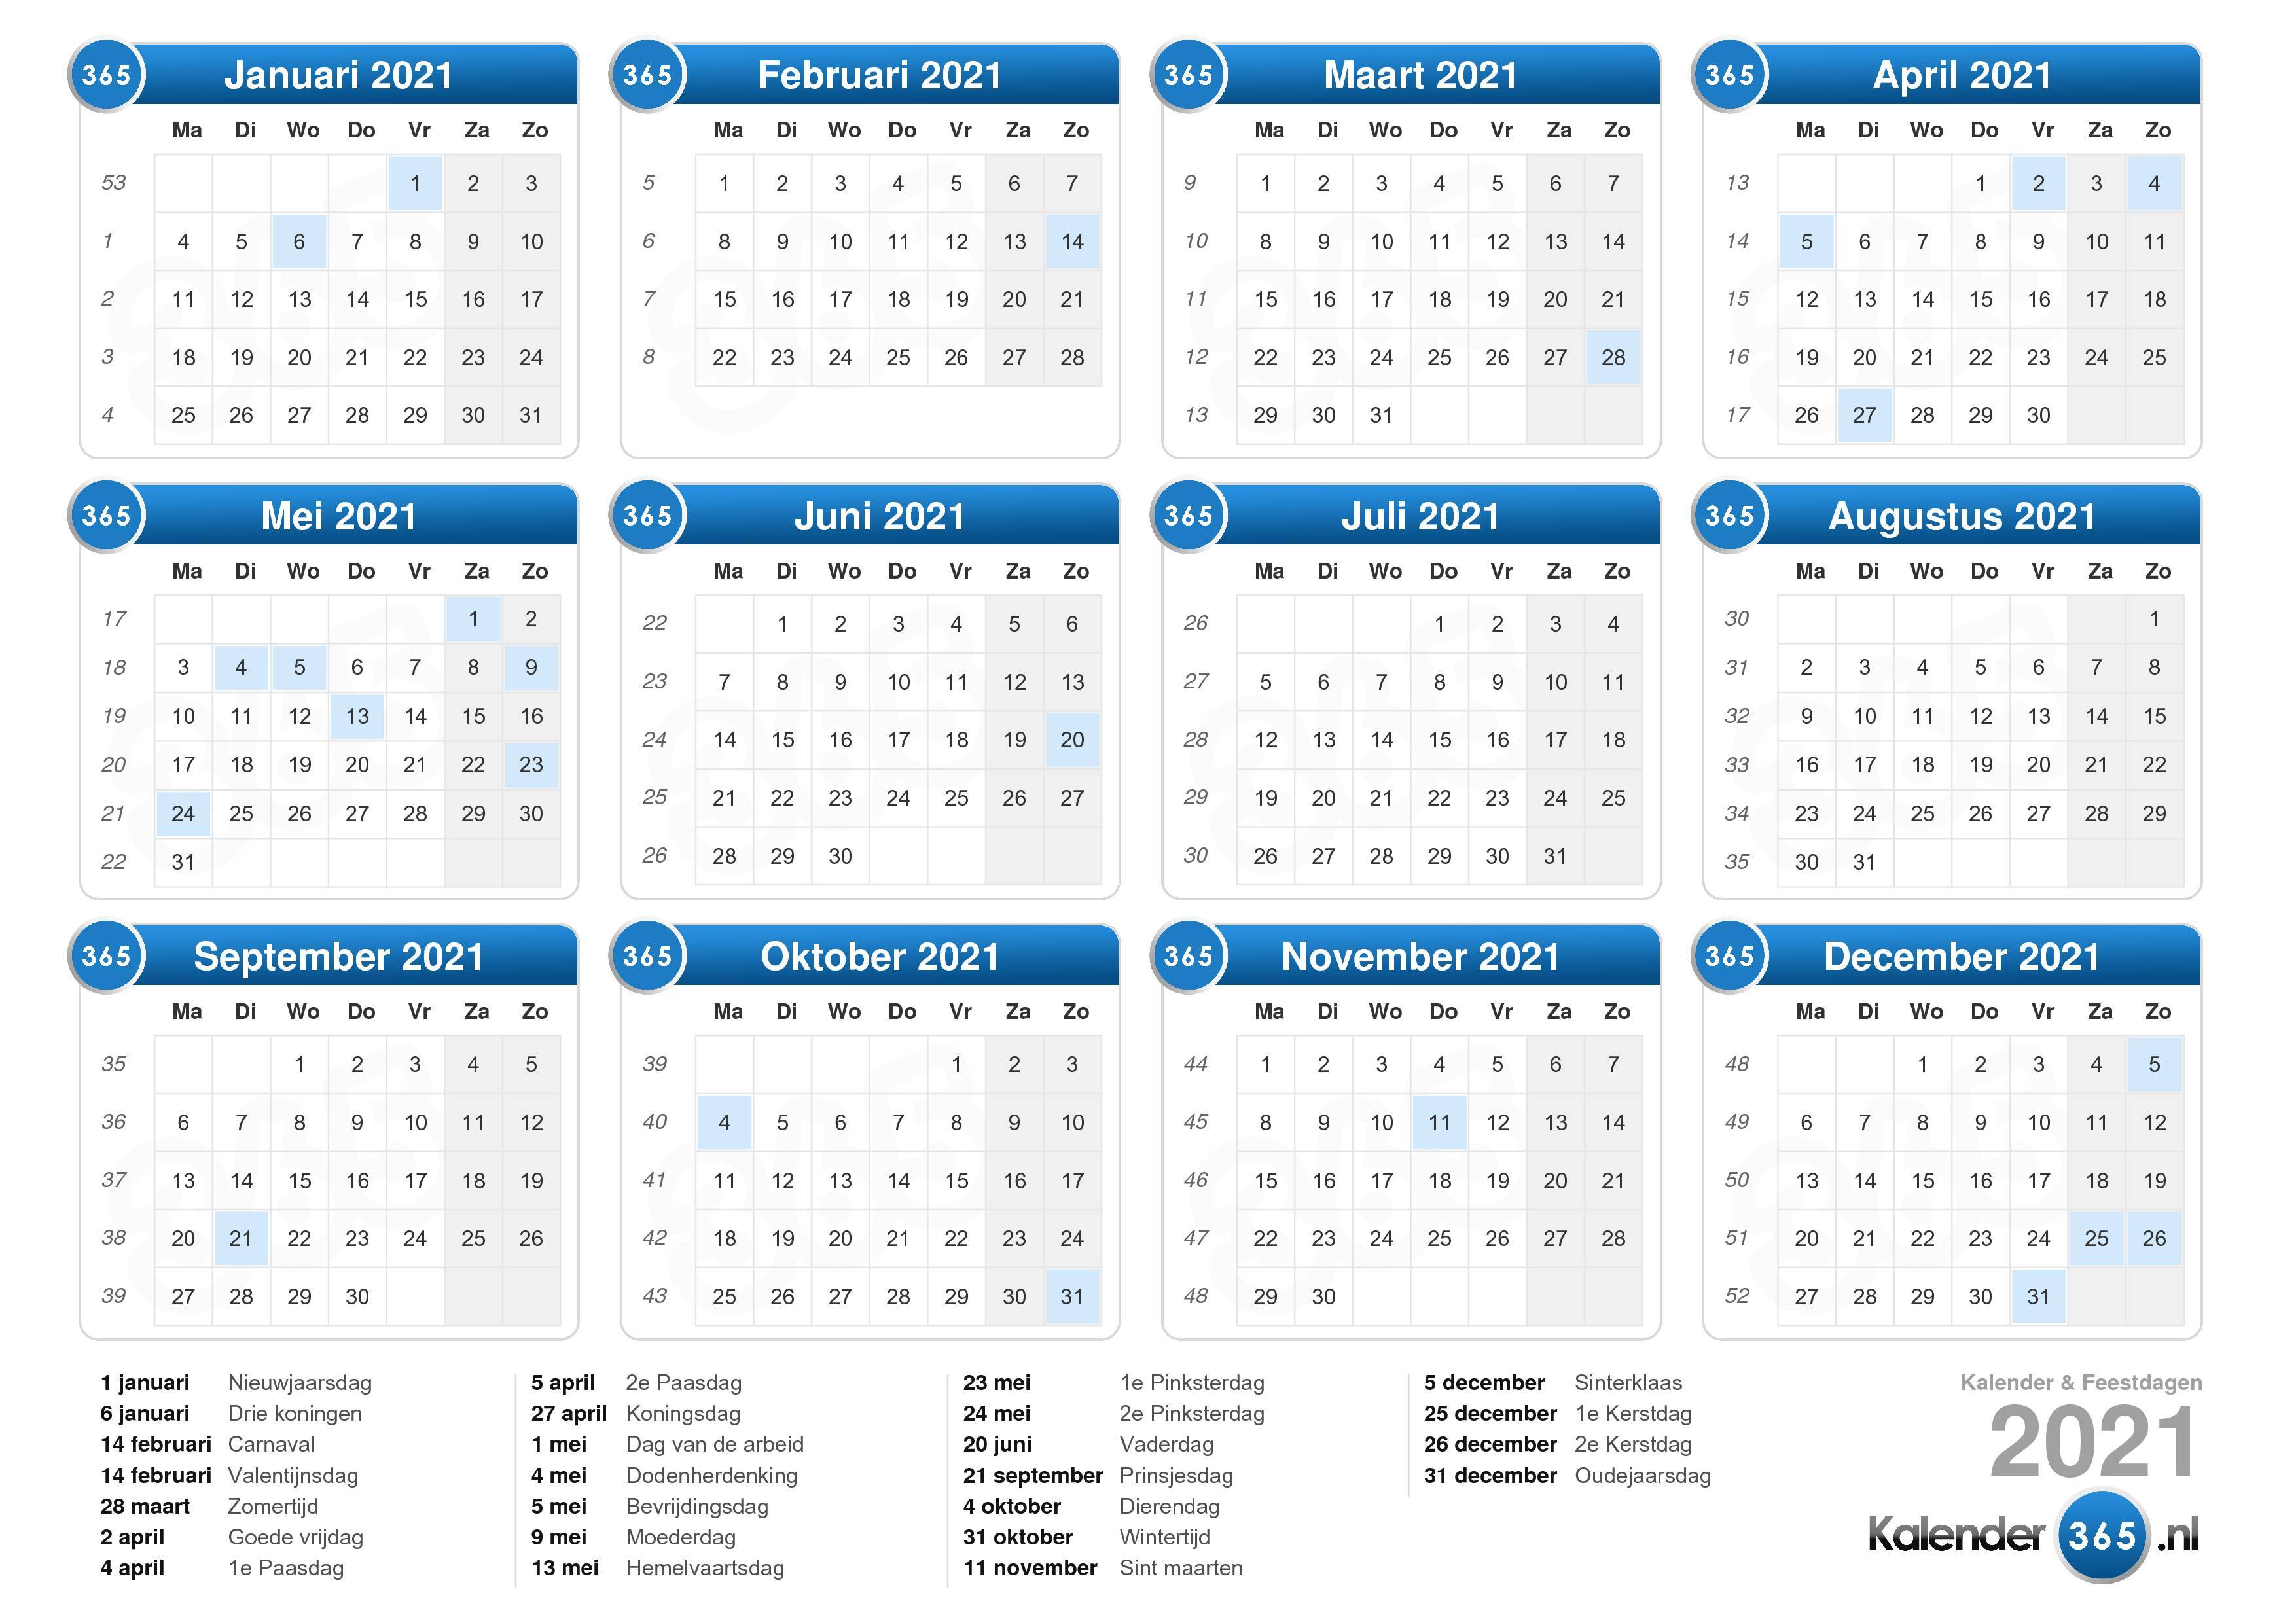 Post kiespijn Taiko buik Kalender 2021